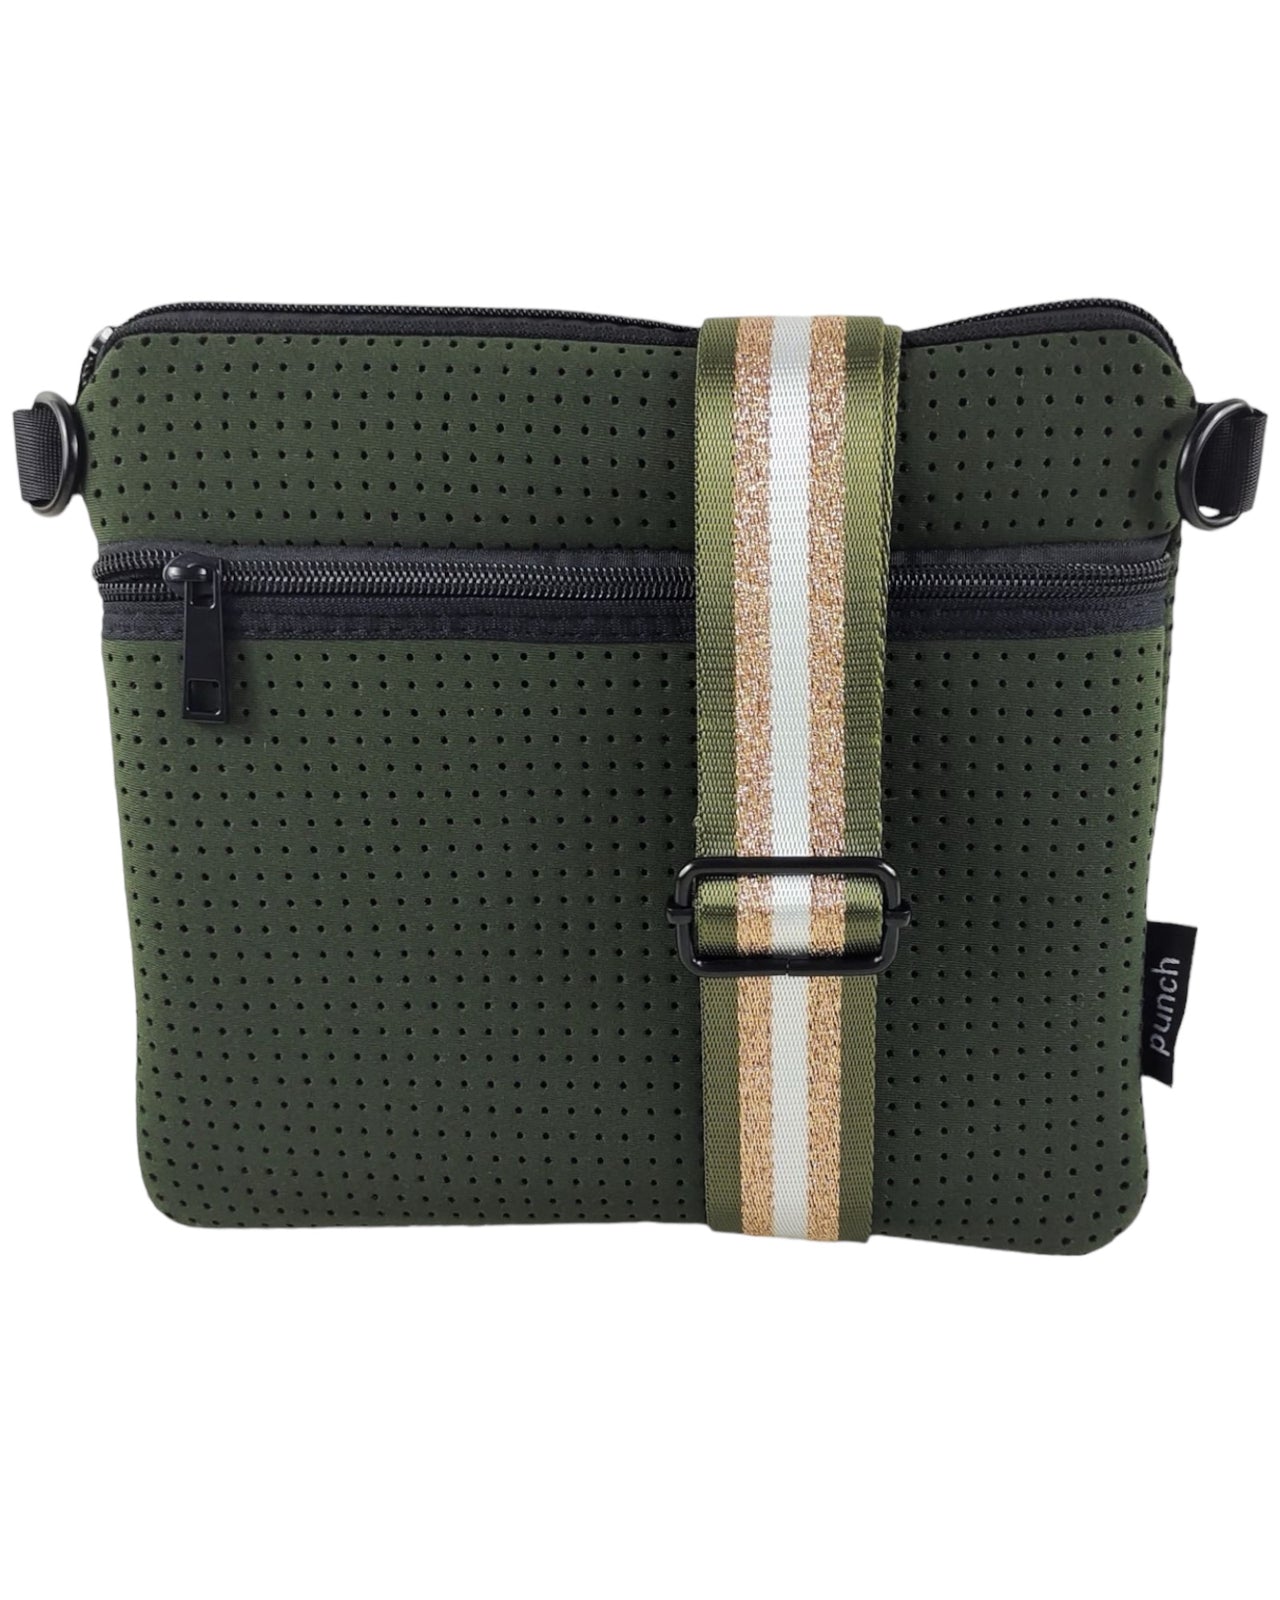 Olive Green Neoprene Flat Walker Bag